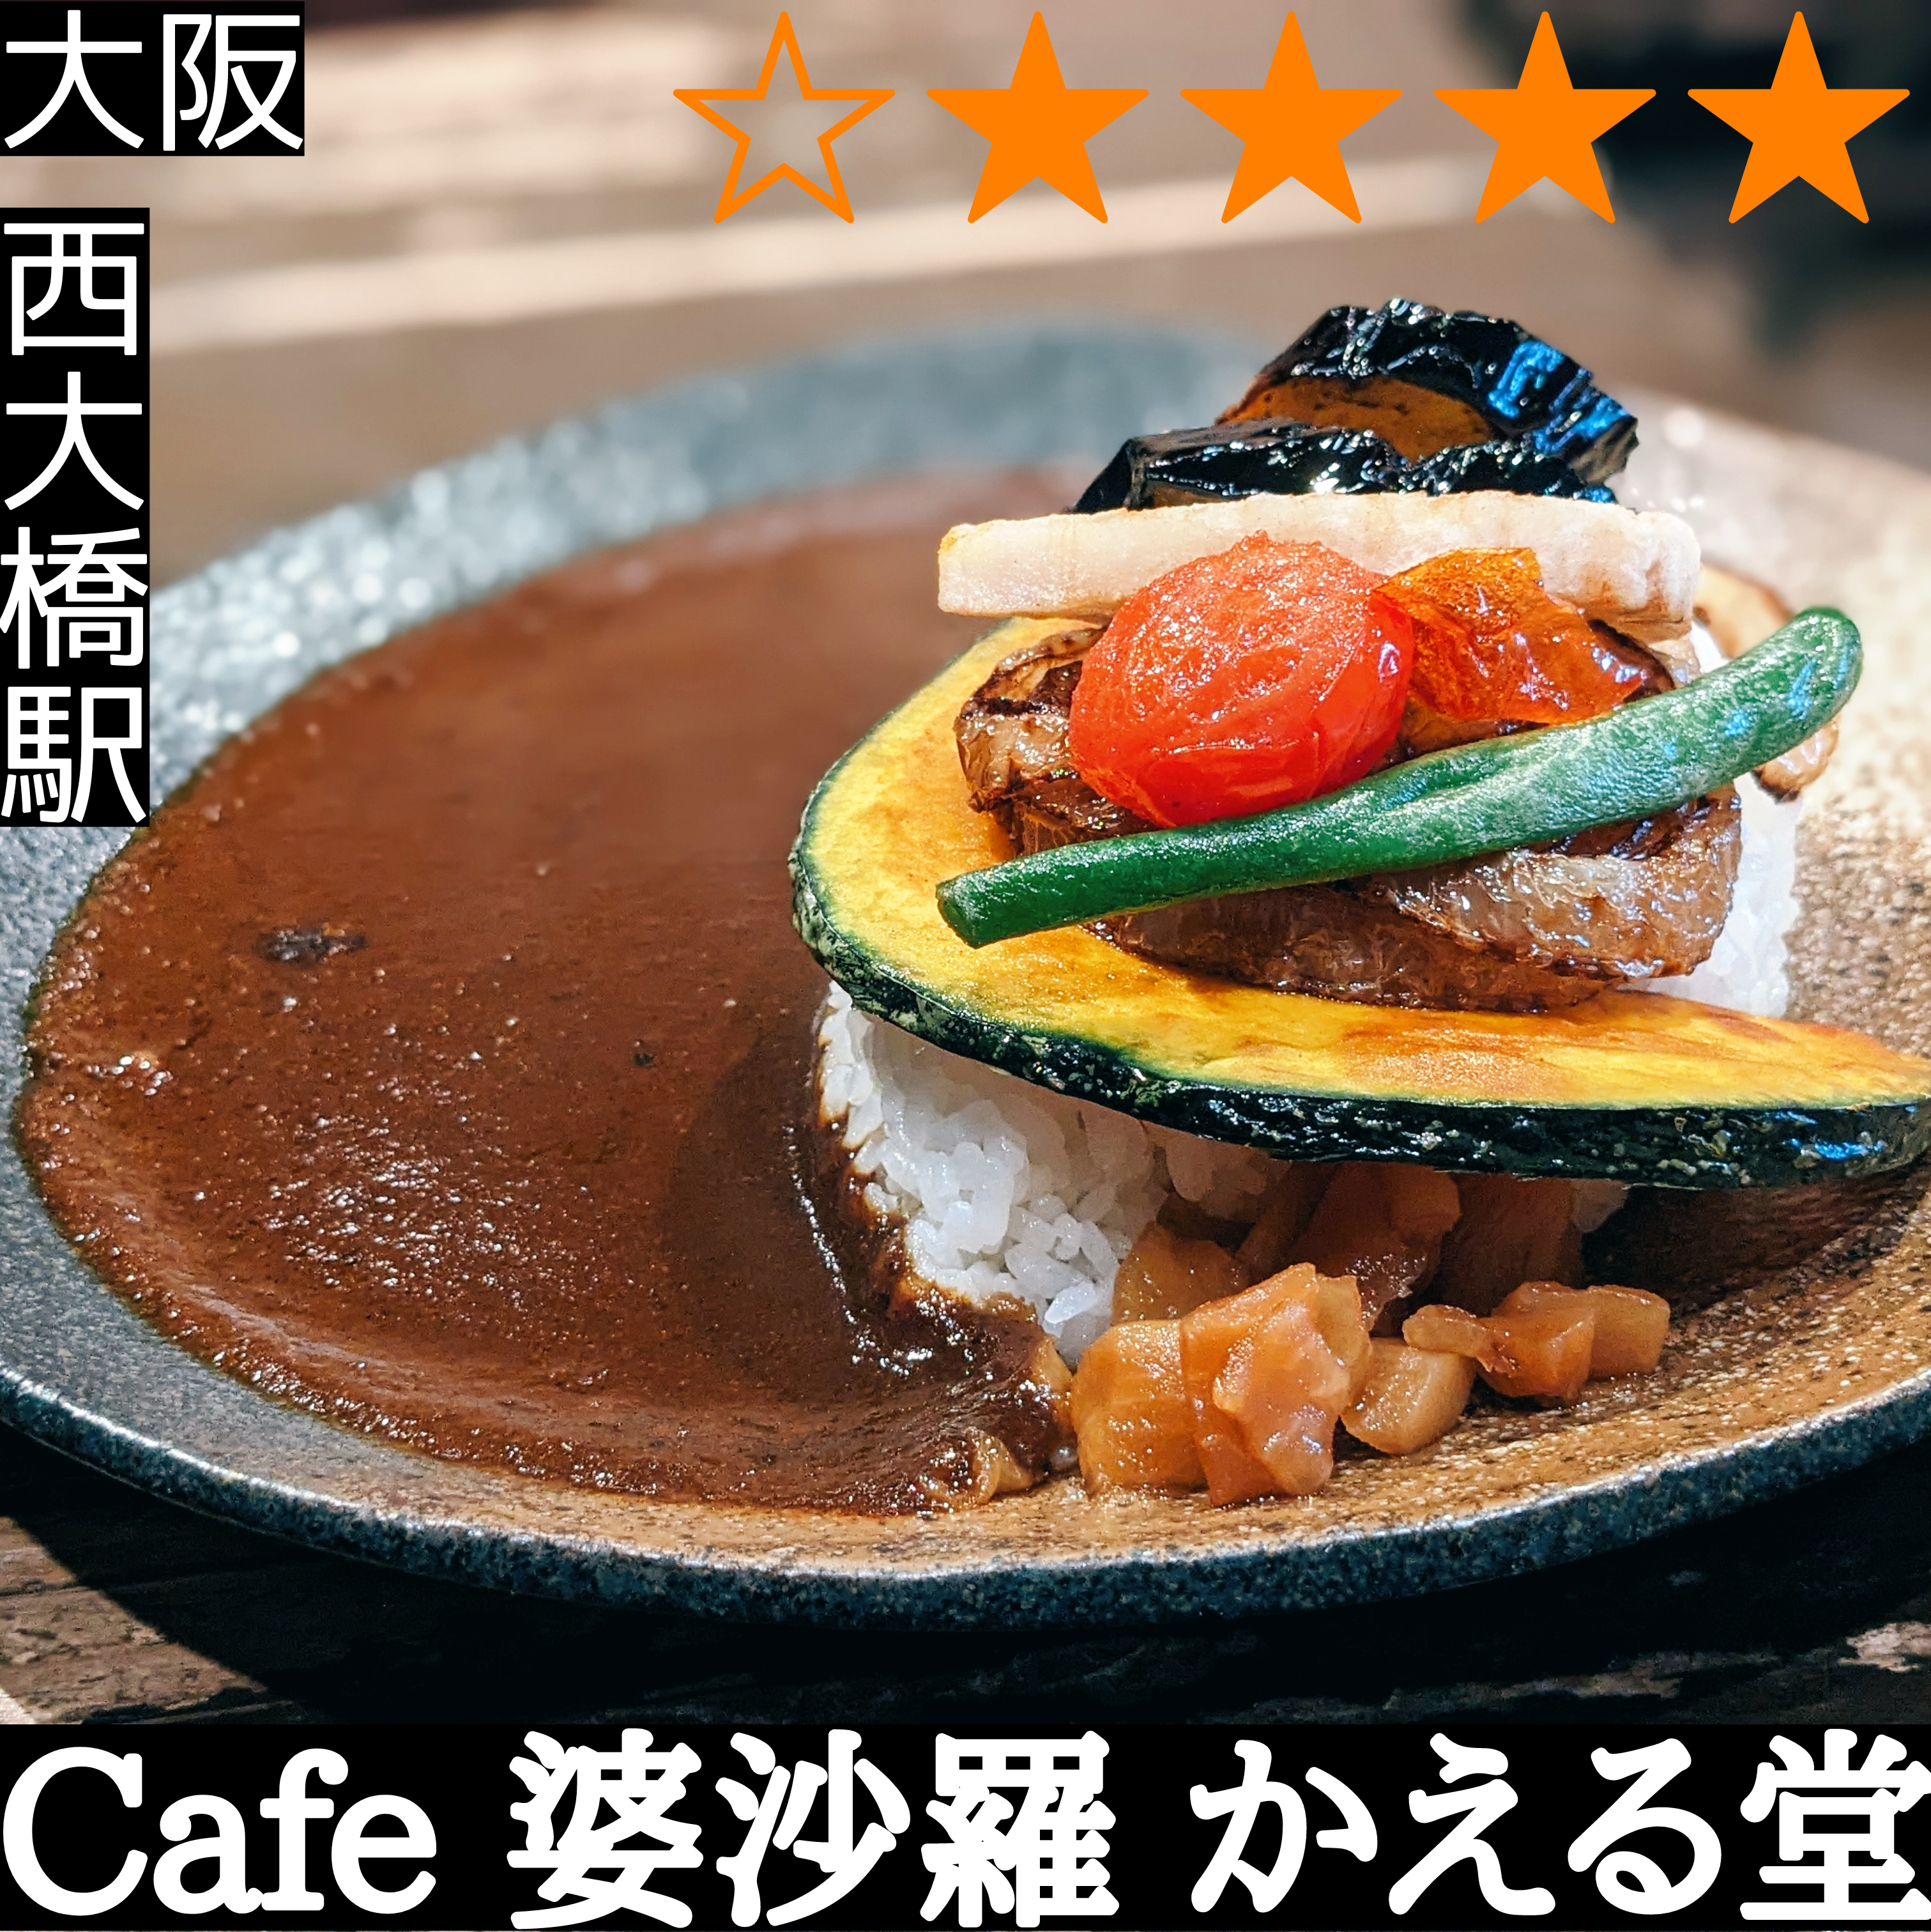 Cafe 婆沙羅 かえる堂(西大橋駅・カレー、定食、カフェ)